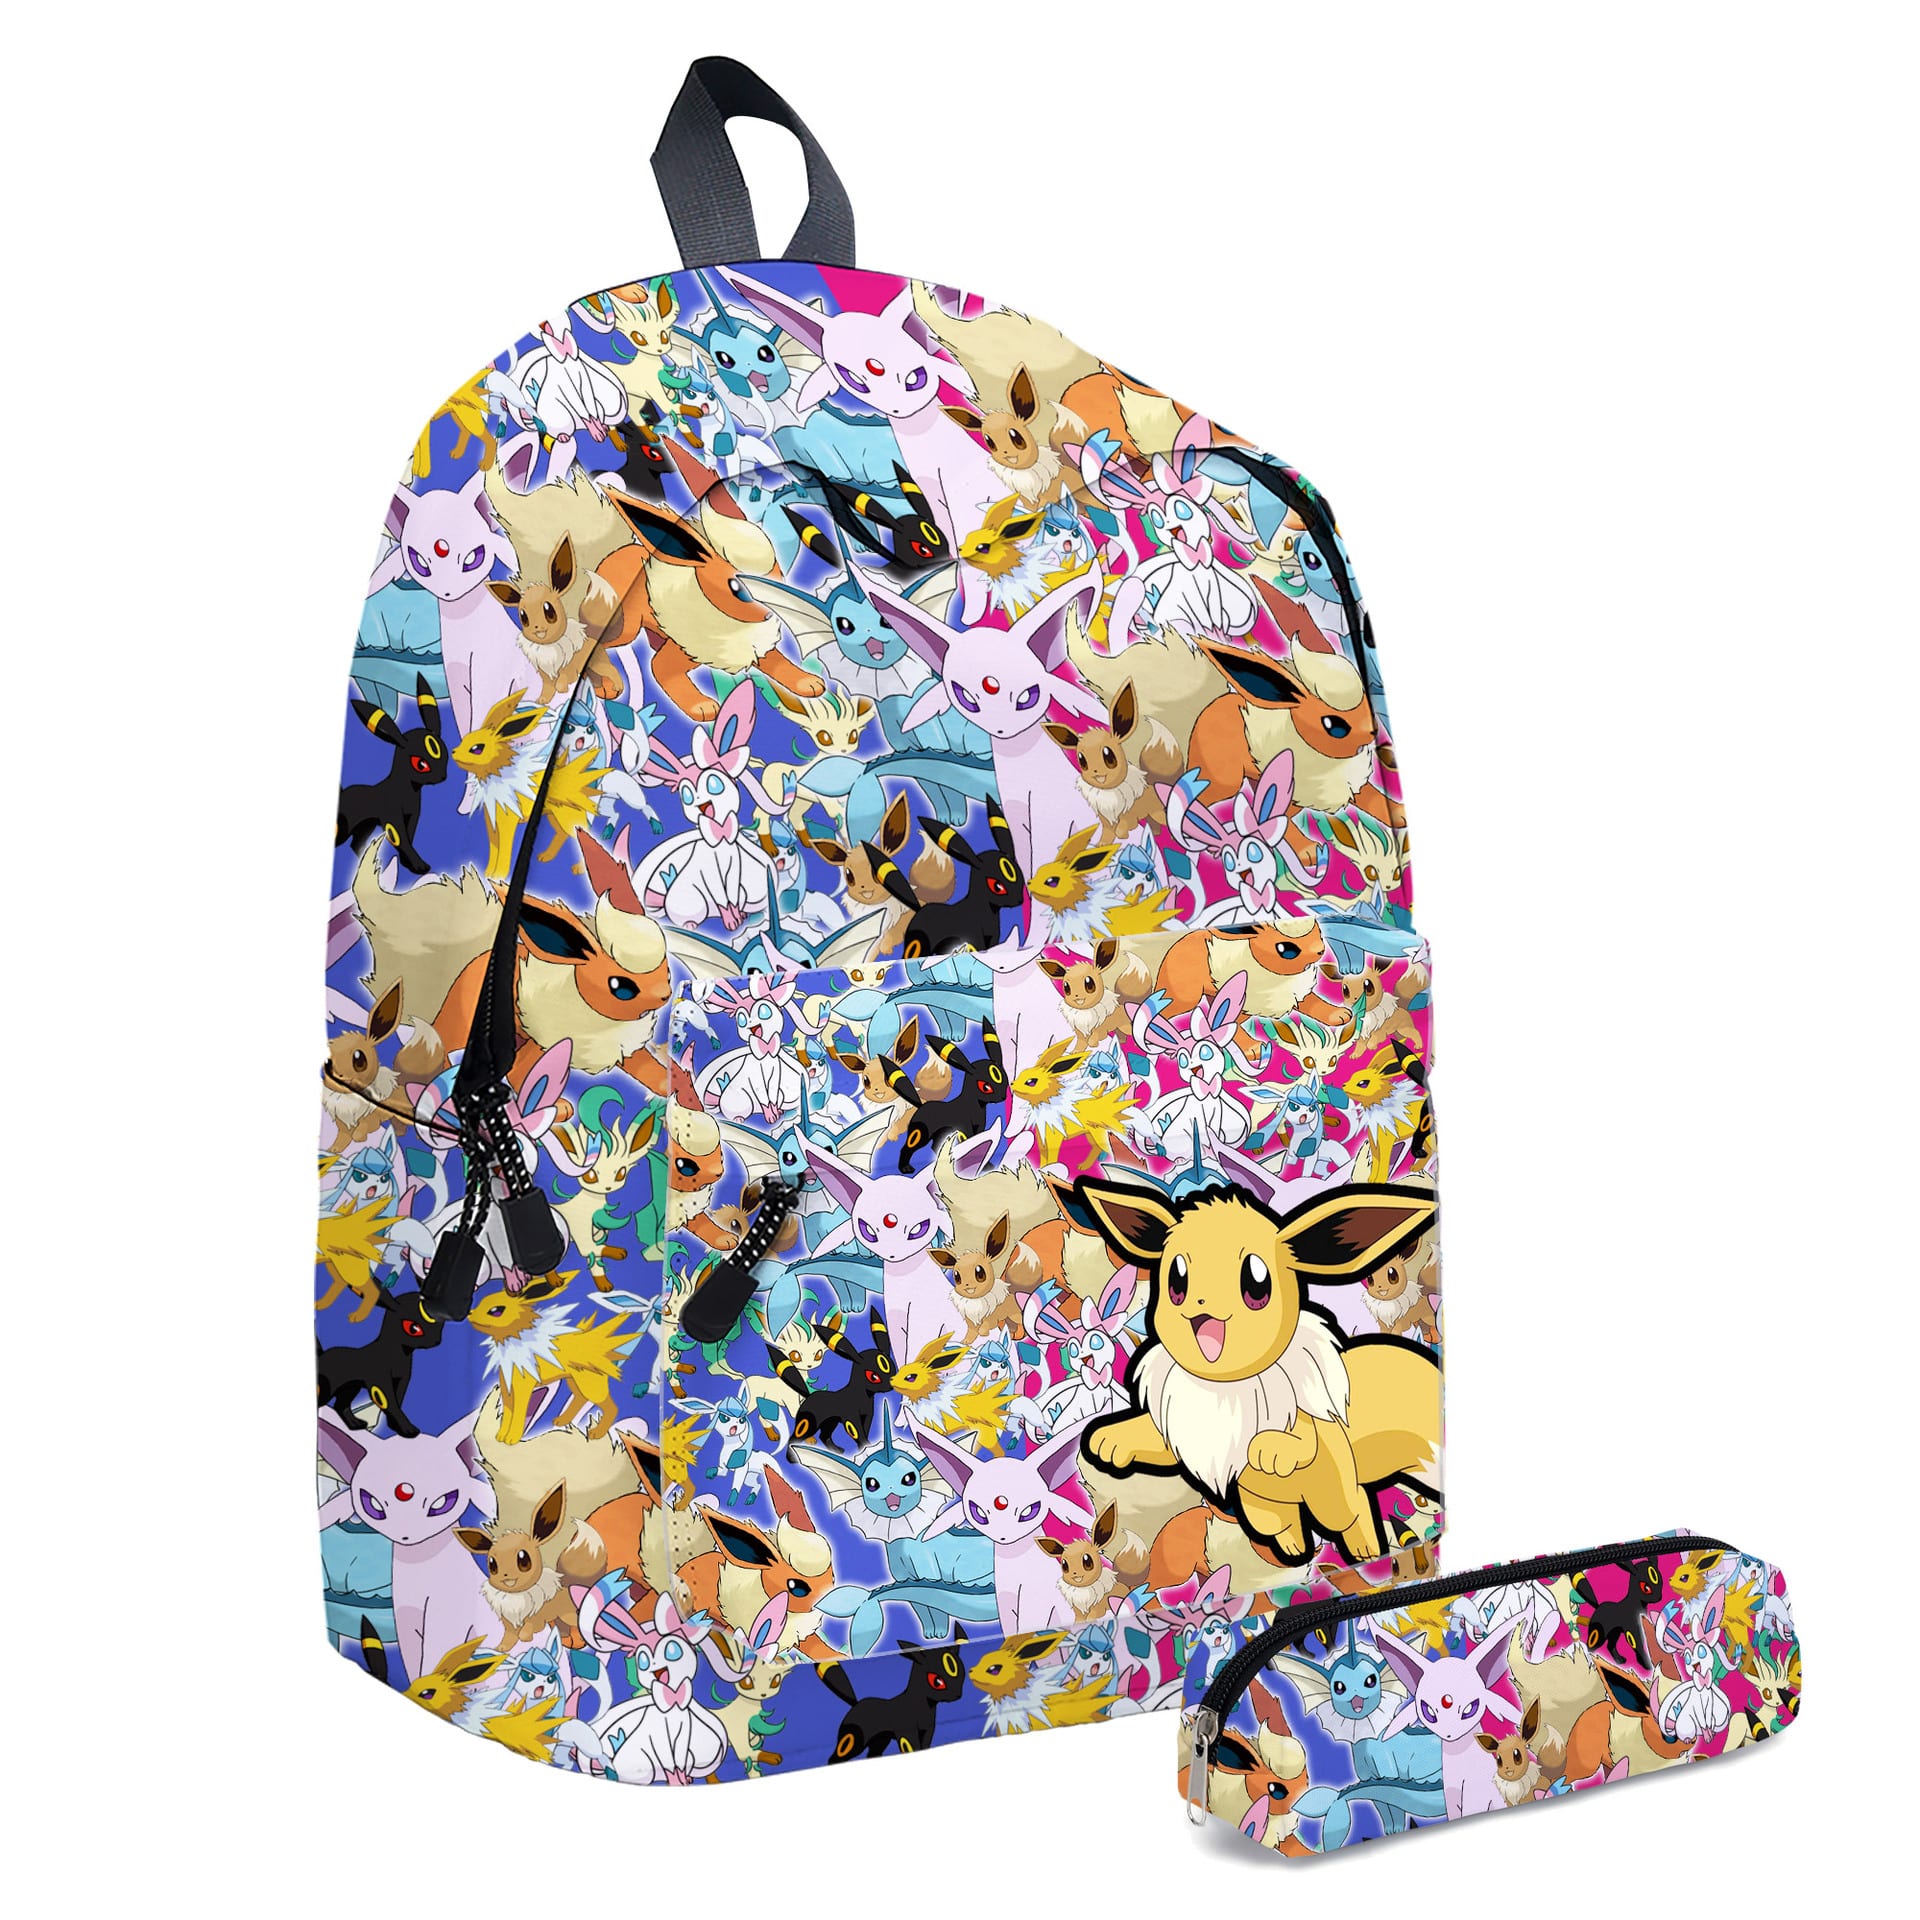 Mångfärgad Pokémon-ryggsäck och matchande fodral mot en vit bakgrund